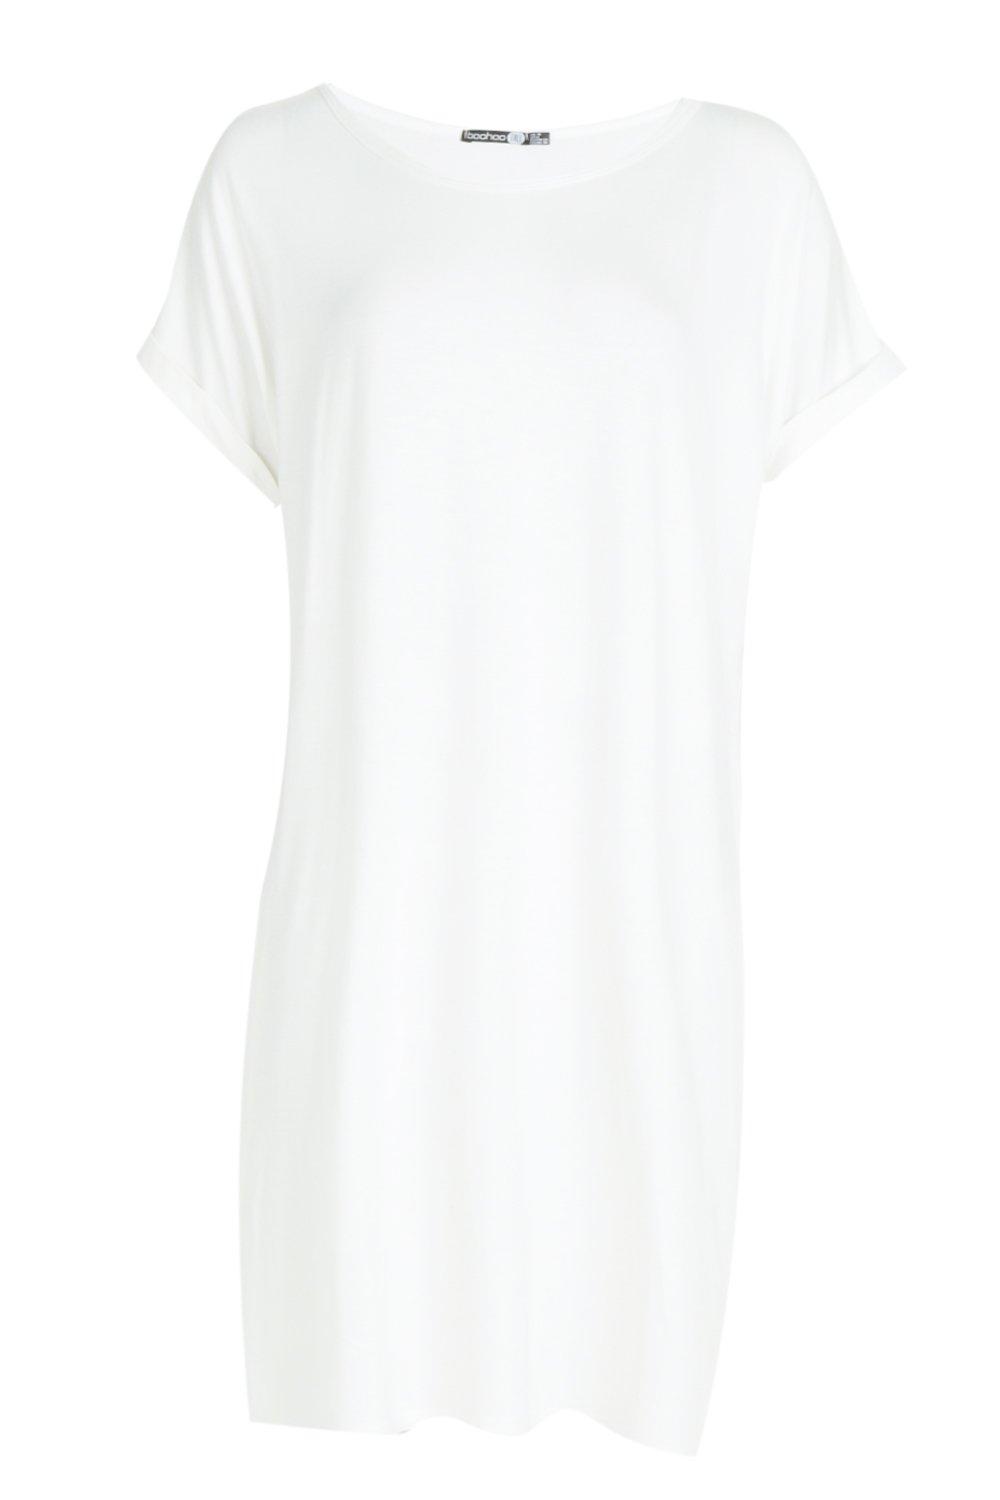 tall white shirt dress